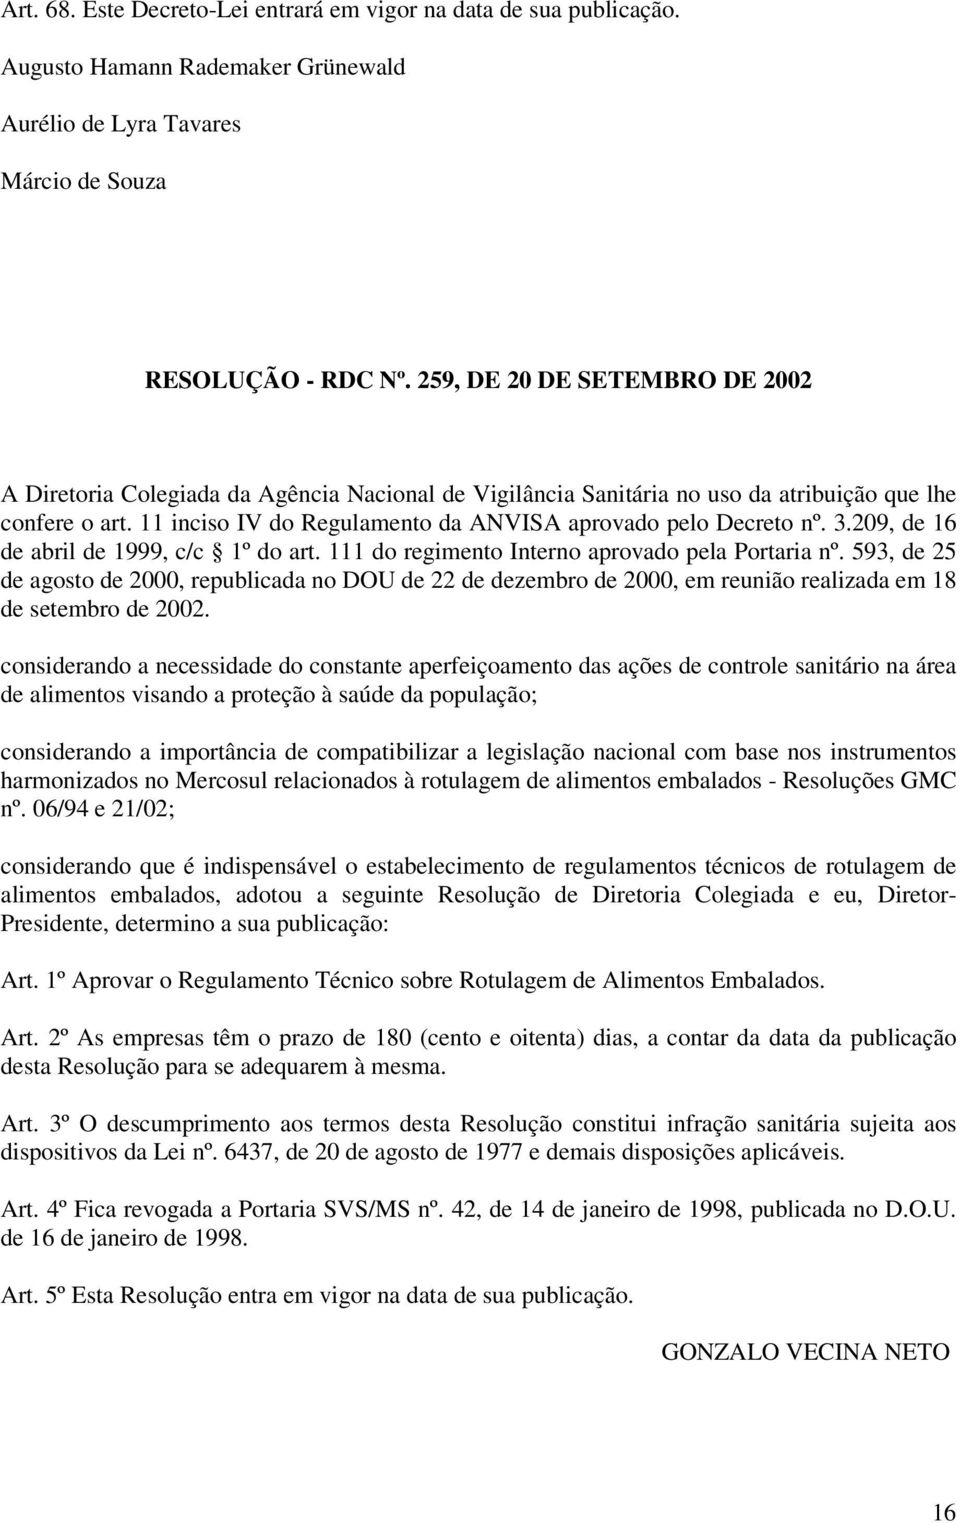 11 inciso IV do Regulamento da ANVISA aprovado pelo Decreto nº. 3.209, de 16 de abril de 1999, c/c 1º do art. 111 do regimento Interno aprovado pela Portaria nº.